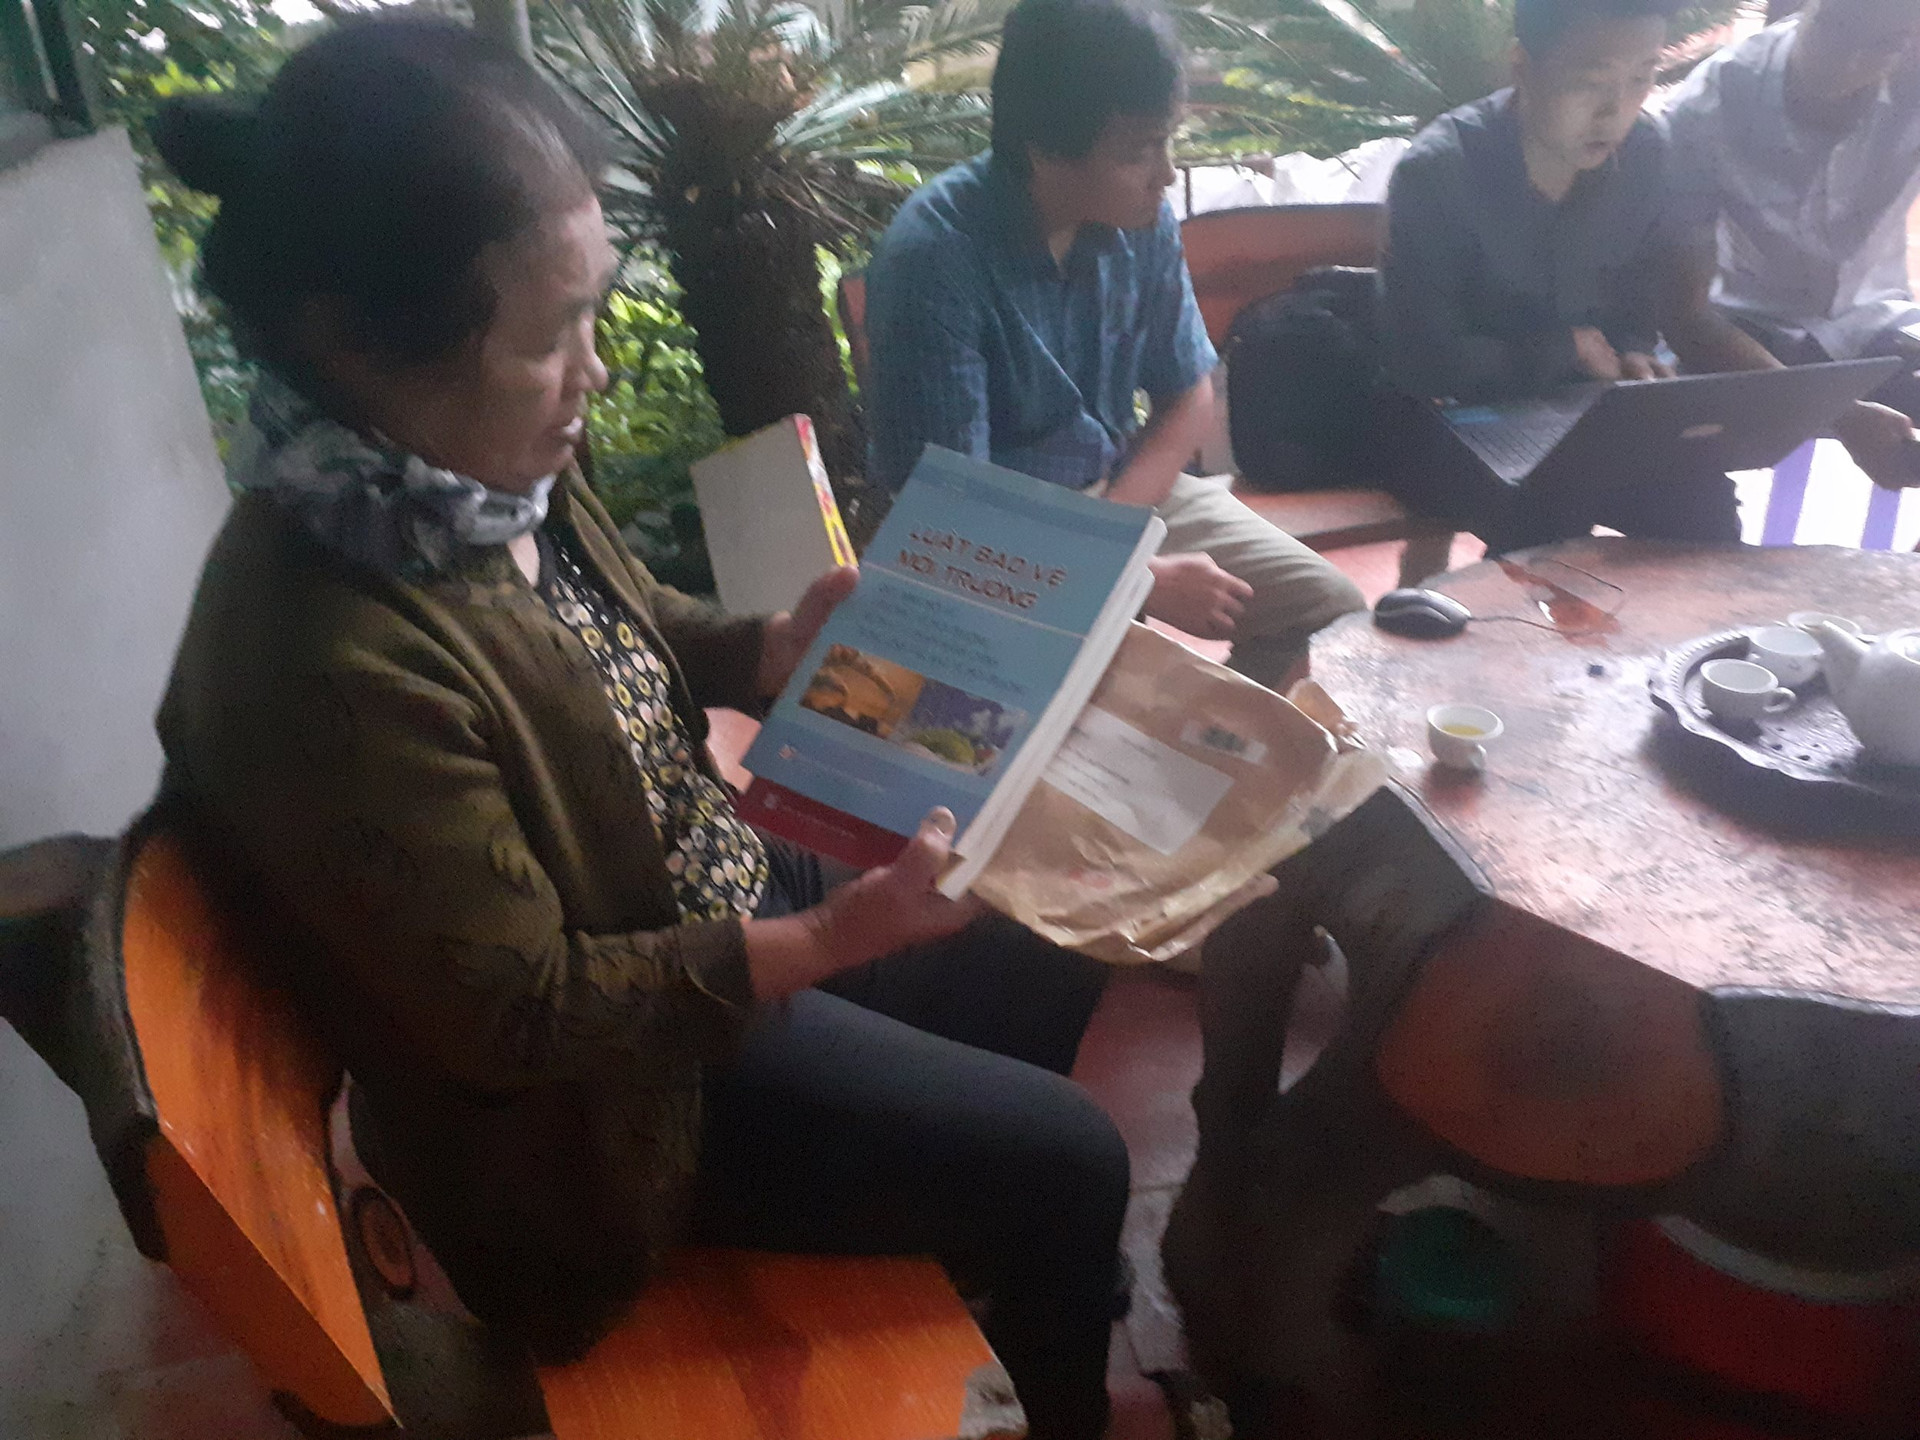 Thái Nguyên: Cảnh giác với chiêu giả mạo cán bộ môi trường để lừa đảo người chăn nuôi